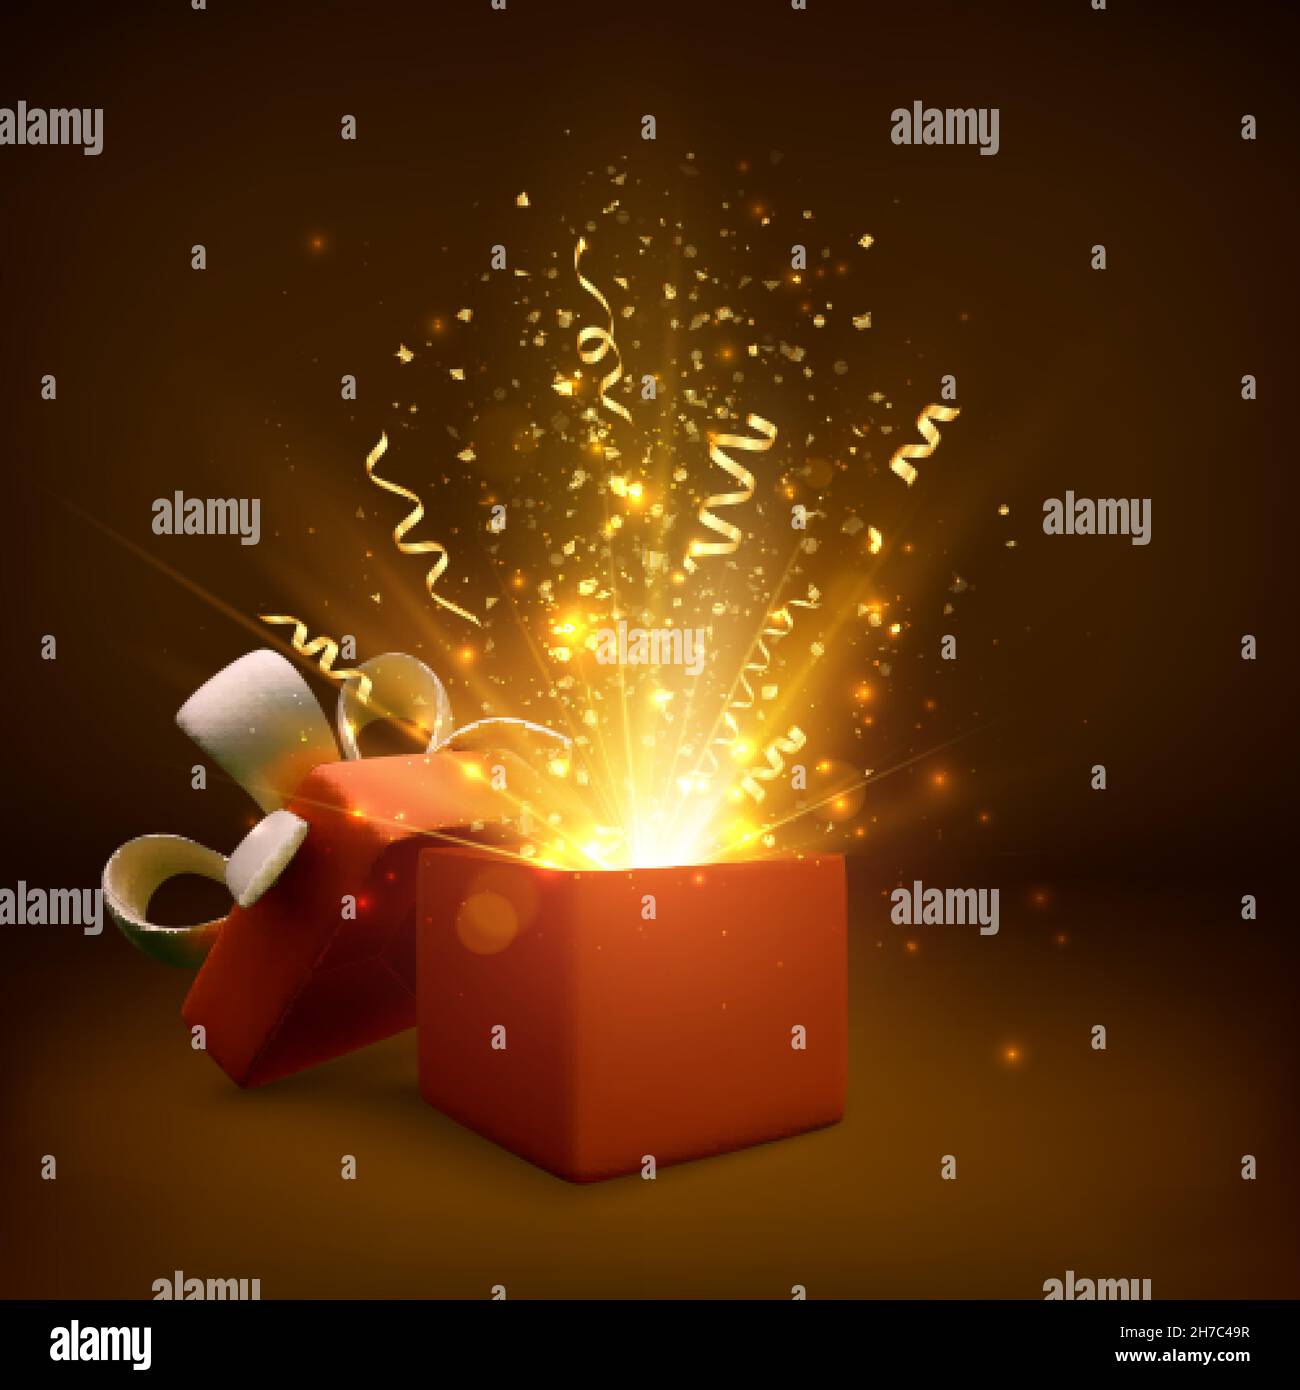 Offenes Geschenk mit Feuerwerk und Glitzer. Geschenk Box Dekoration Design-Element. Weihnachtsbanner mit offener Box. Vektorgrafik Stock Vektor